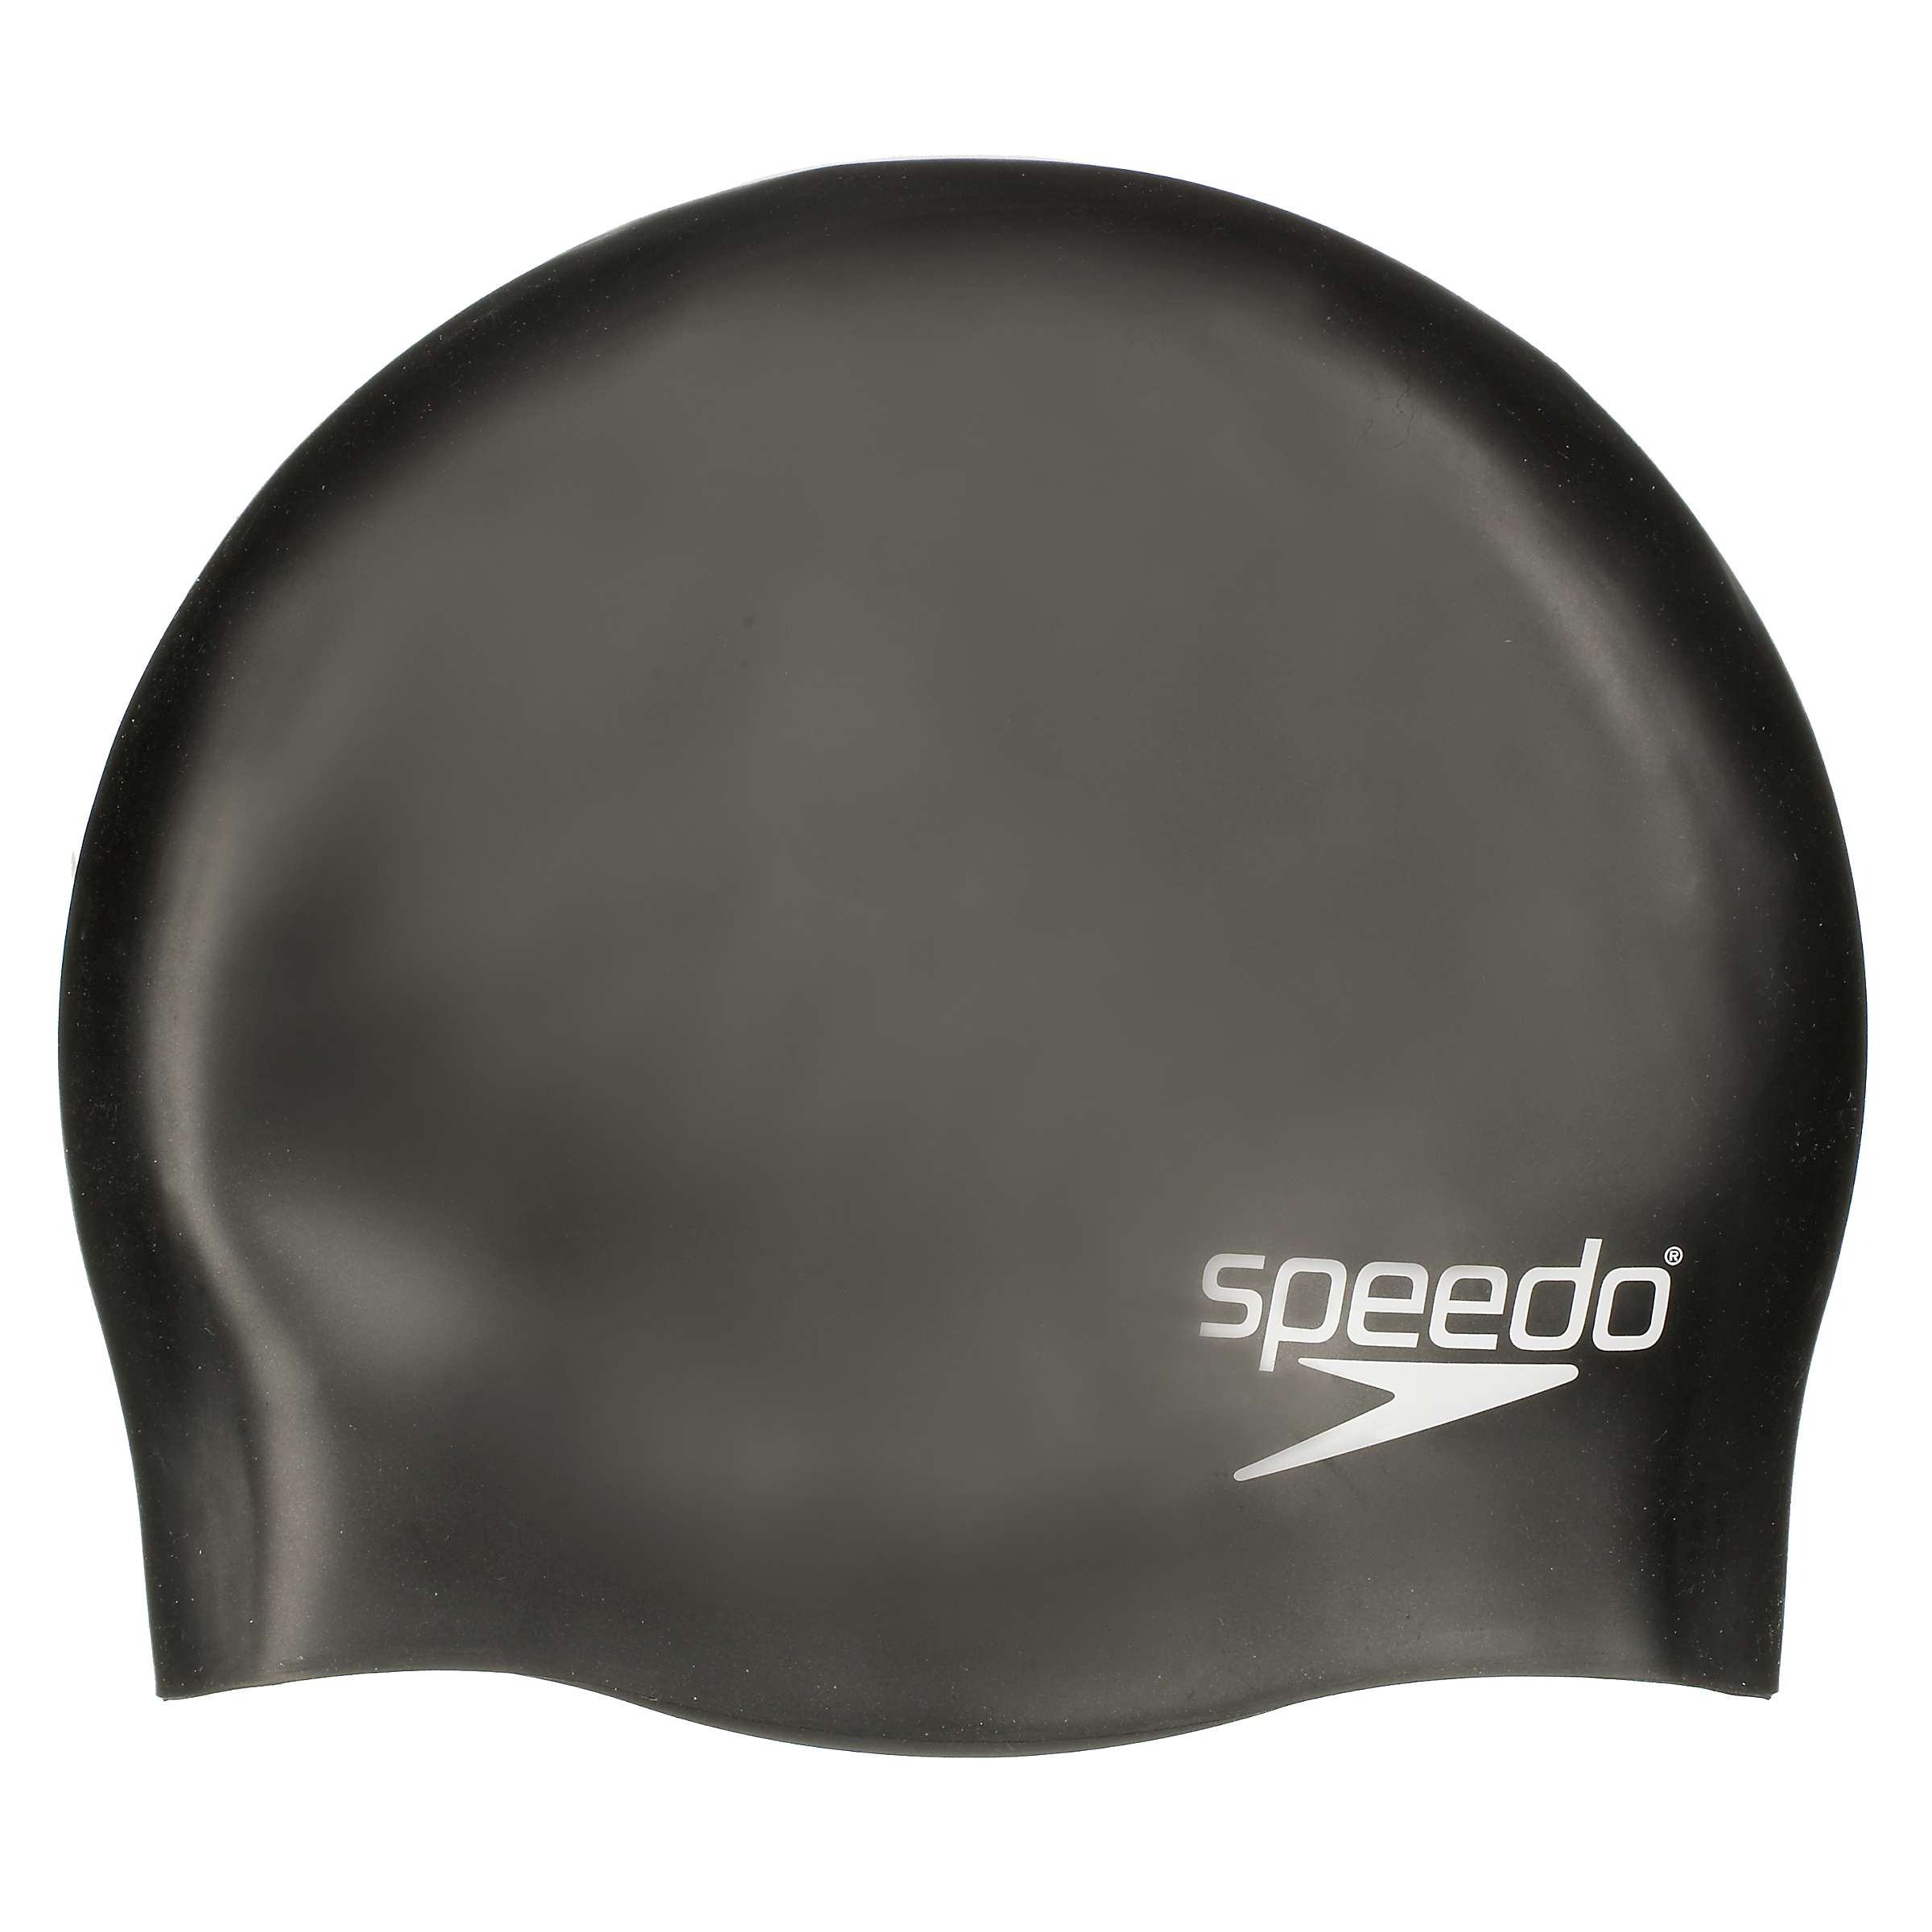 Buy Speedo Plain Silicone Swim Cap, Junior, Black Online at johnlewis.com